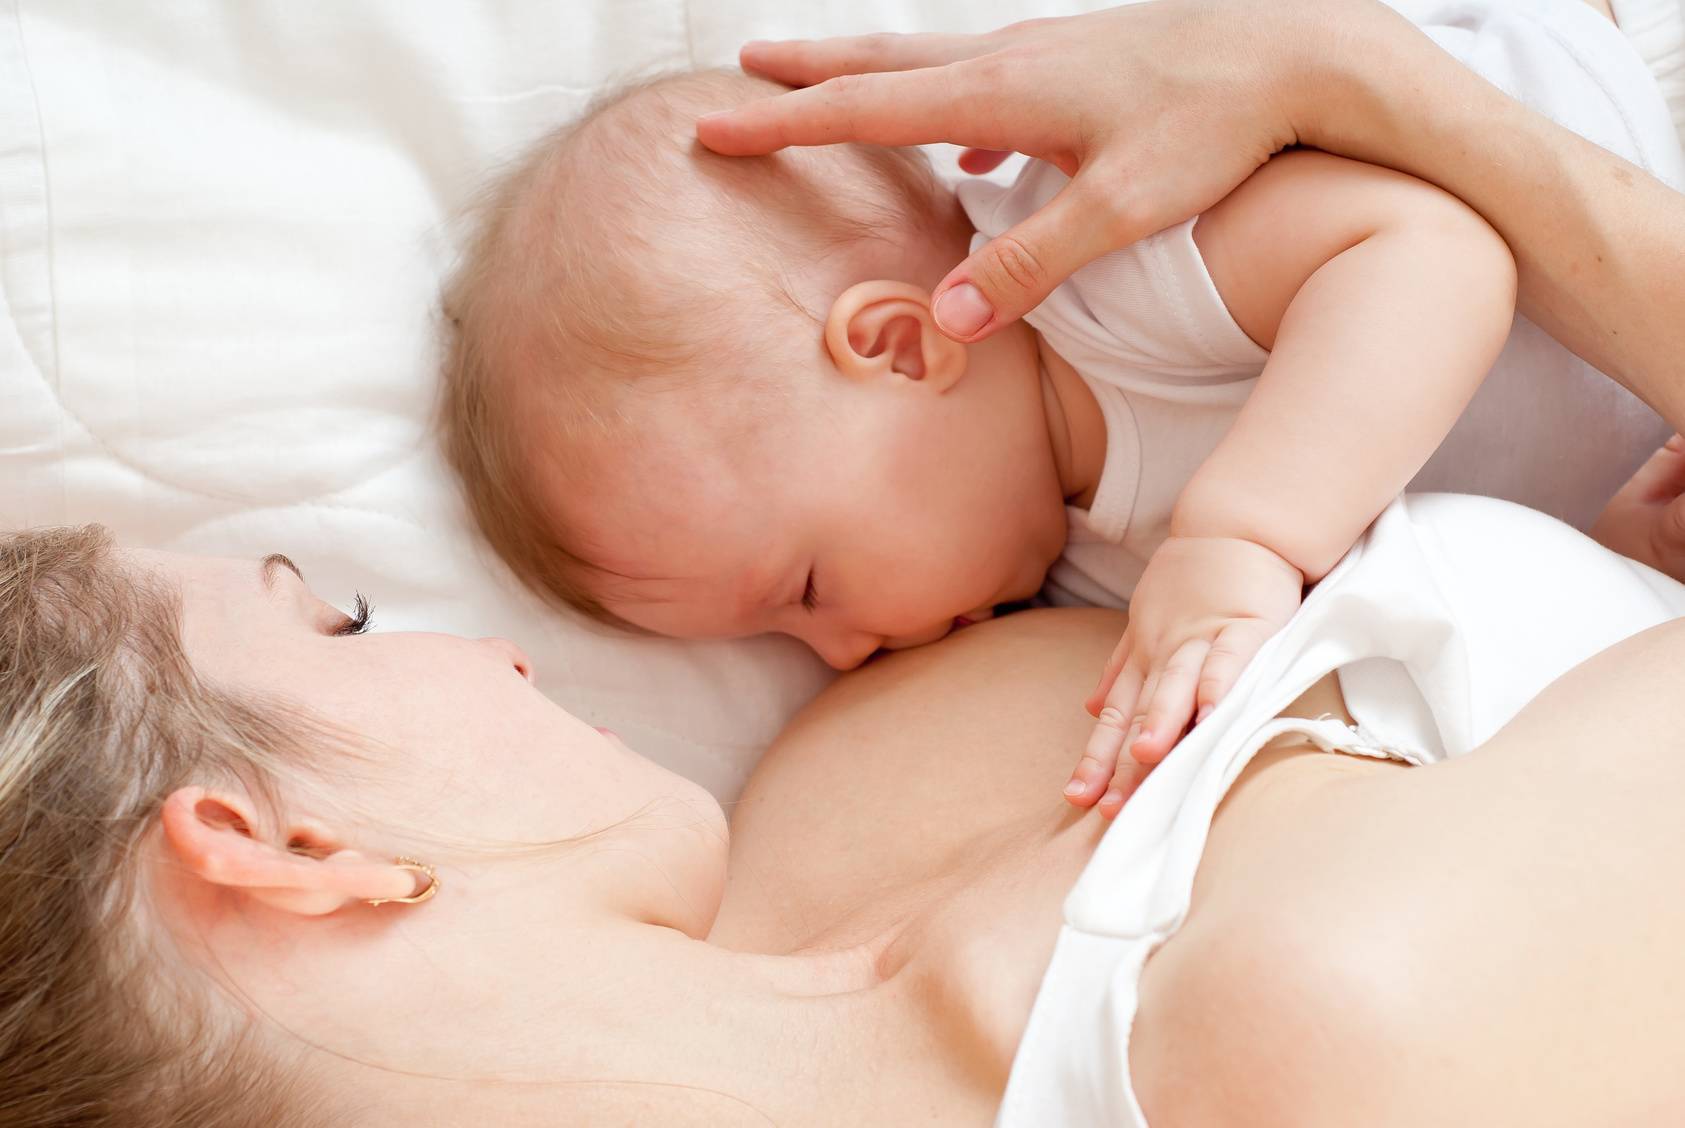 Можно ли осветлять волосы во время кормления ребенка грудным молоком